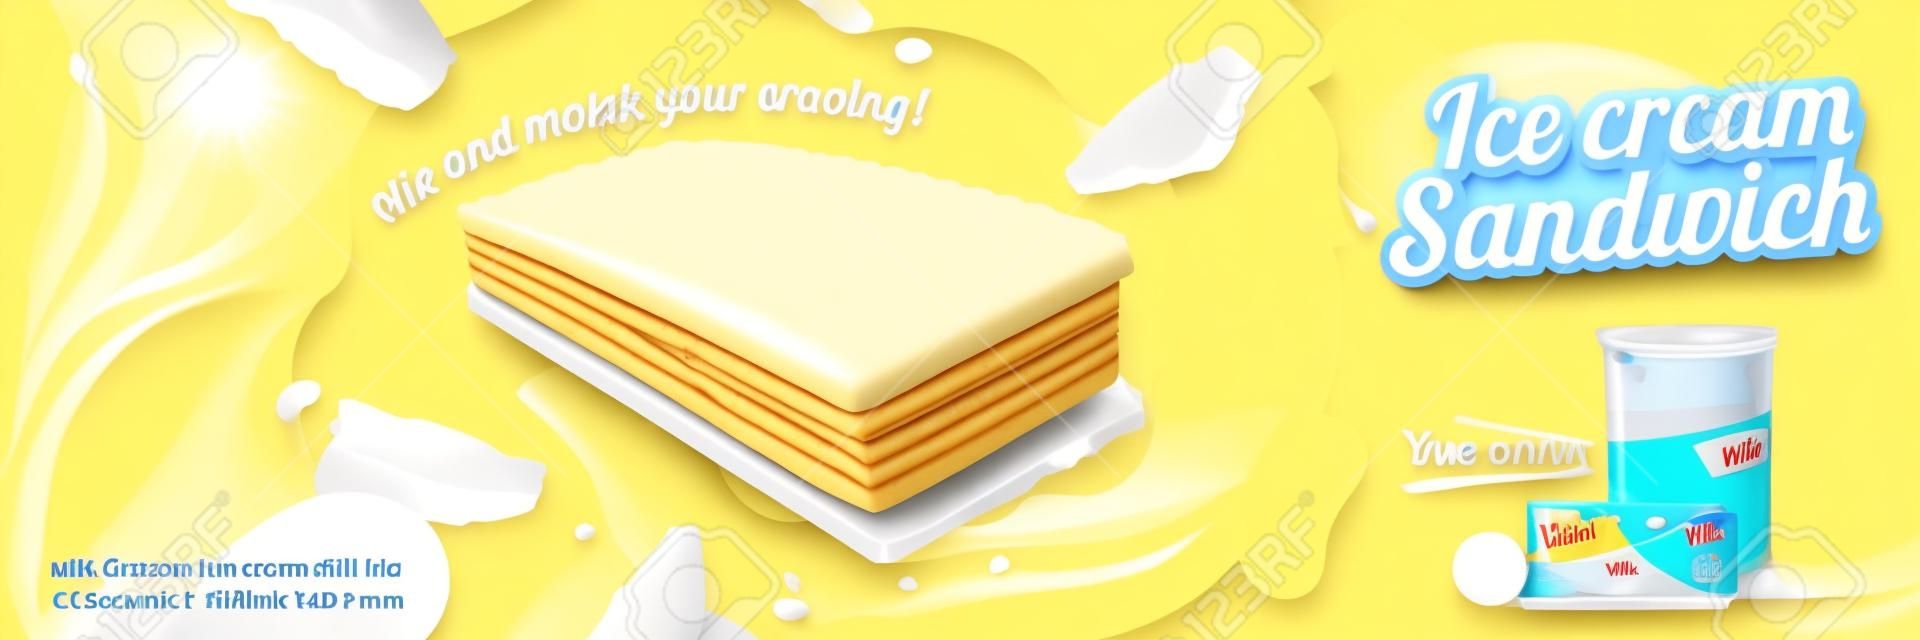 Sandwich à la crème glacée au lait avec biscuits gaufrés et garnitures tourbillonnantes en illustration 3d, fond jaune chrome